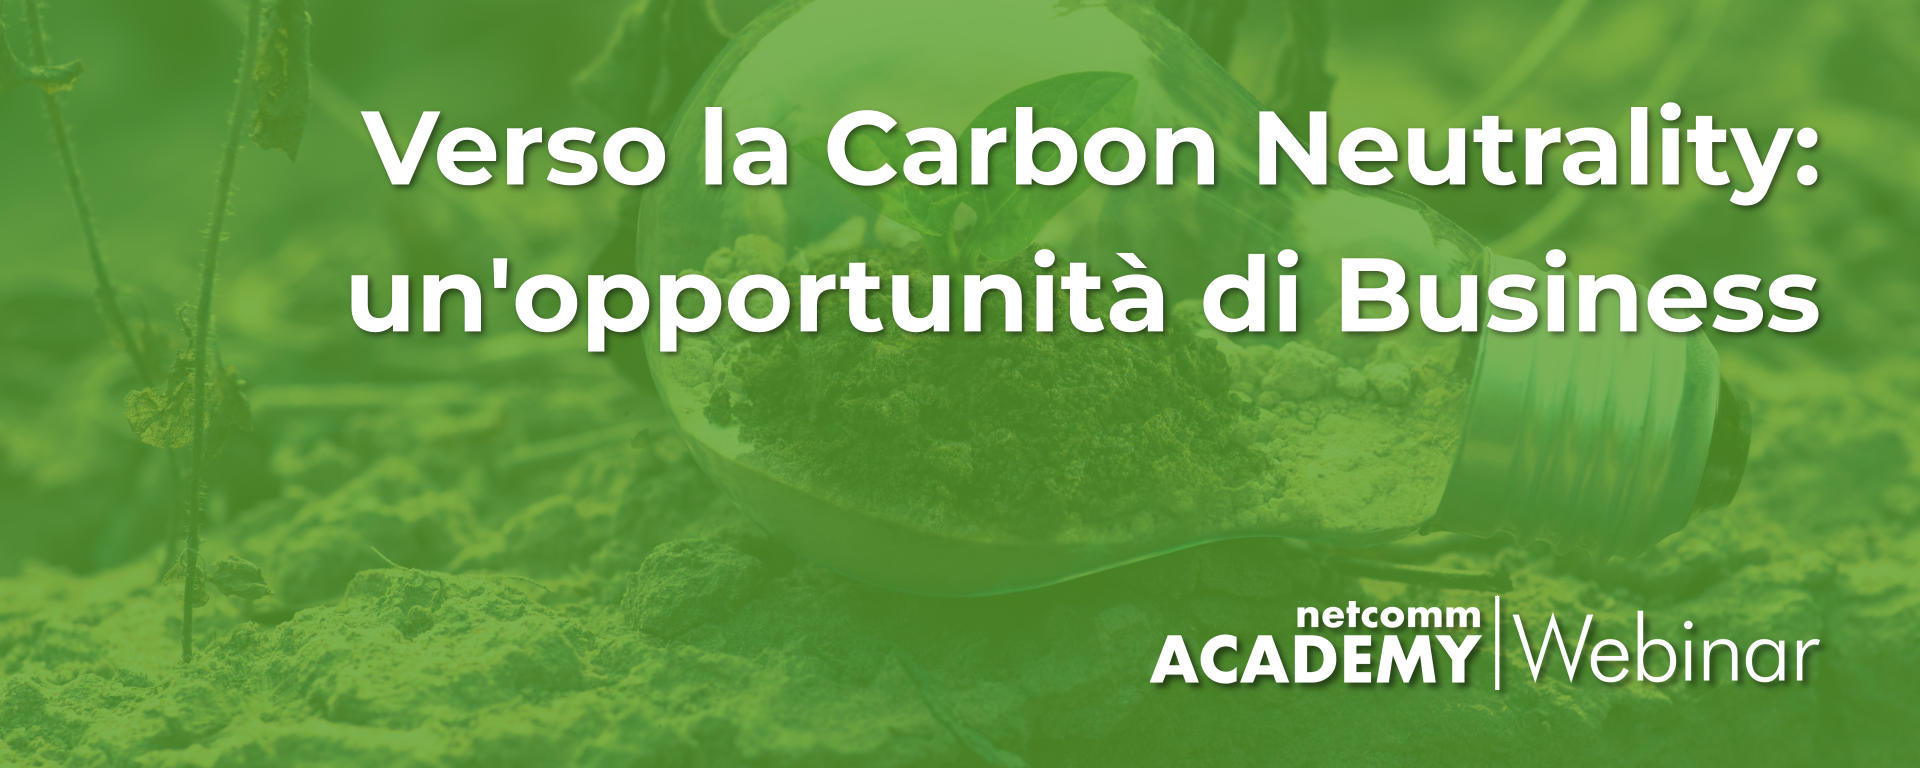 Verso la Carbon Neutrality: un’opportunità di Business